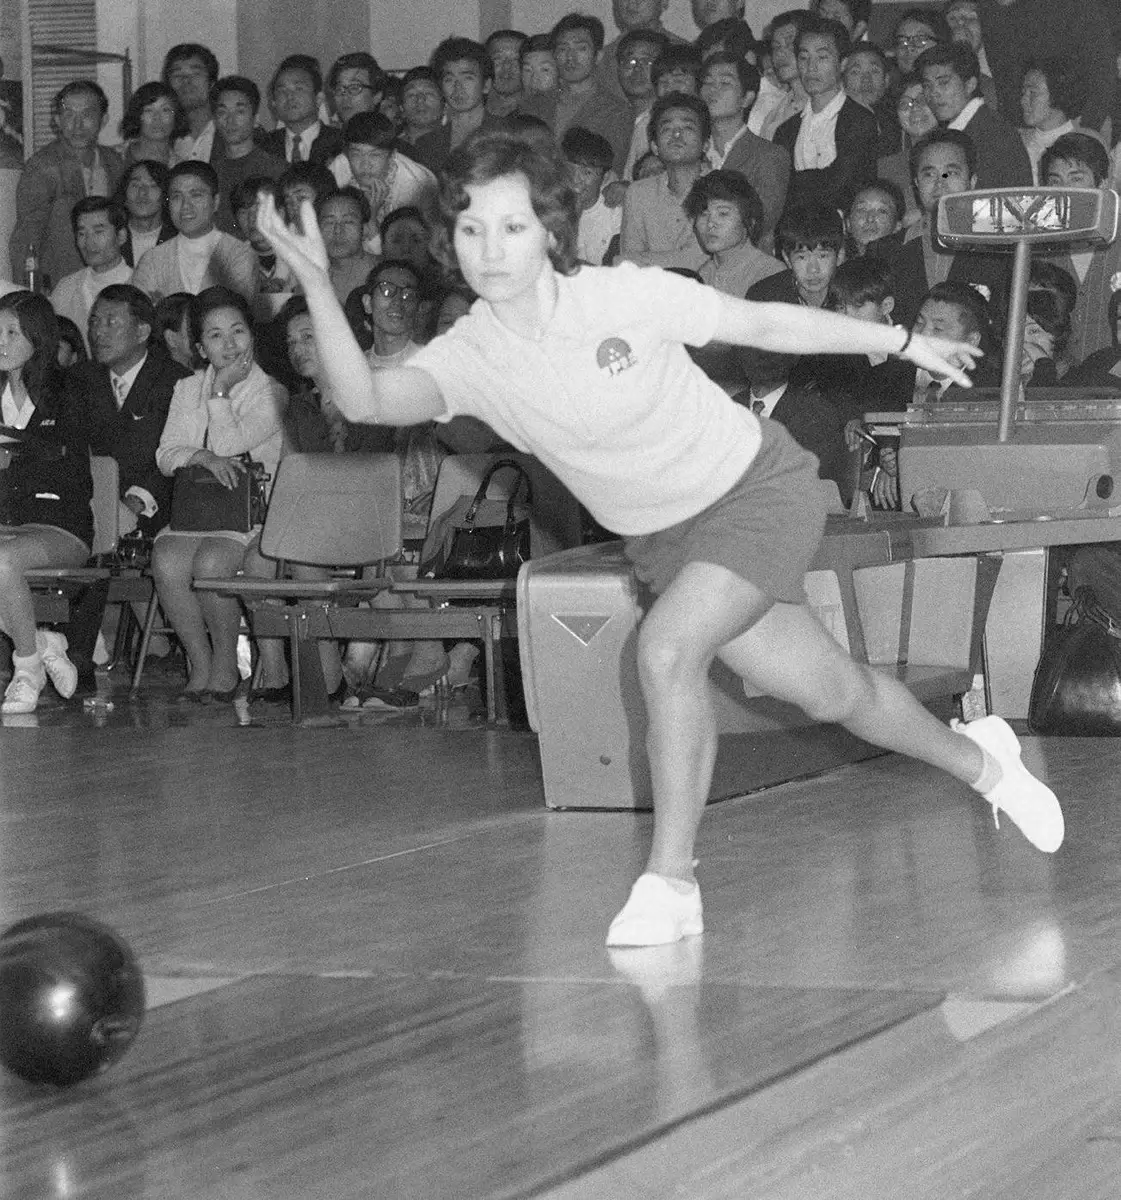 71年、中山徹さんの姉でボウリング女子プロ1期生として人気を博した中山律子さん。